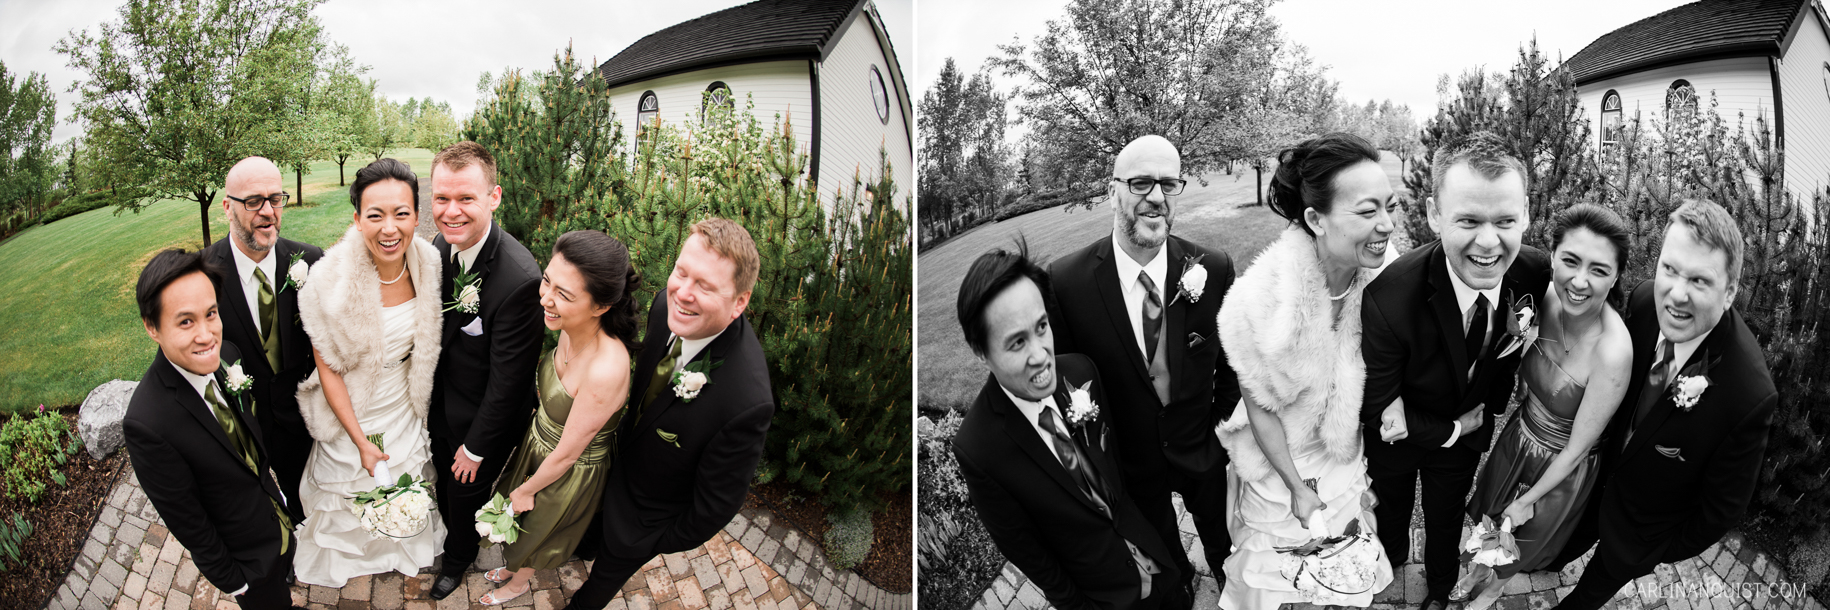 Fun Bridal Party Photos | Calgary Wedding Photographer